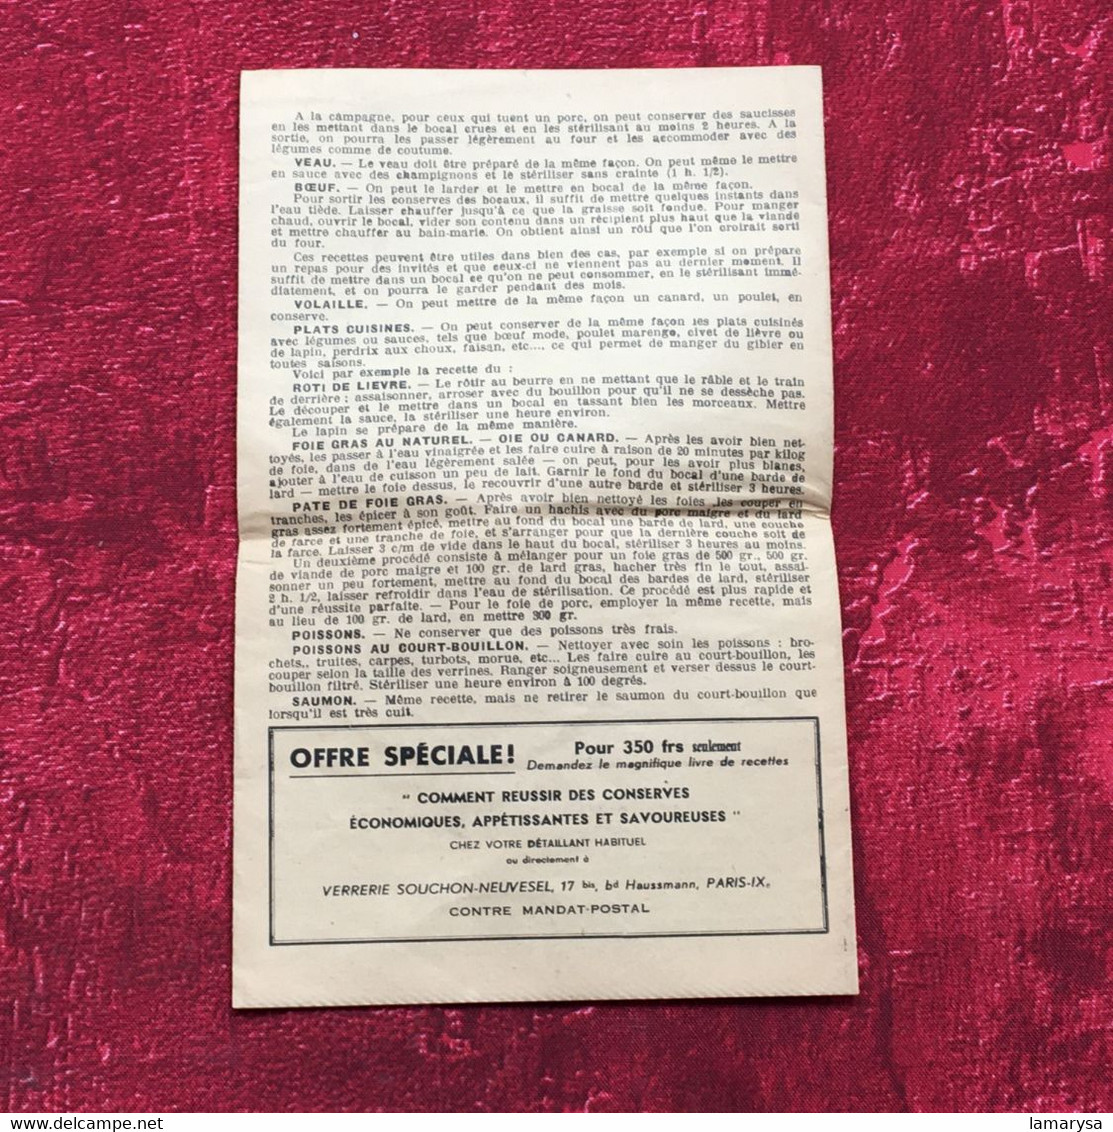 Le Pratique"Conserve-Bocal-Terrine superposable-☛Publicité Vintage-Document commercial dépliant publicitaire Rive de gie